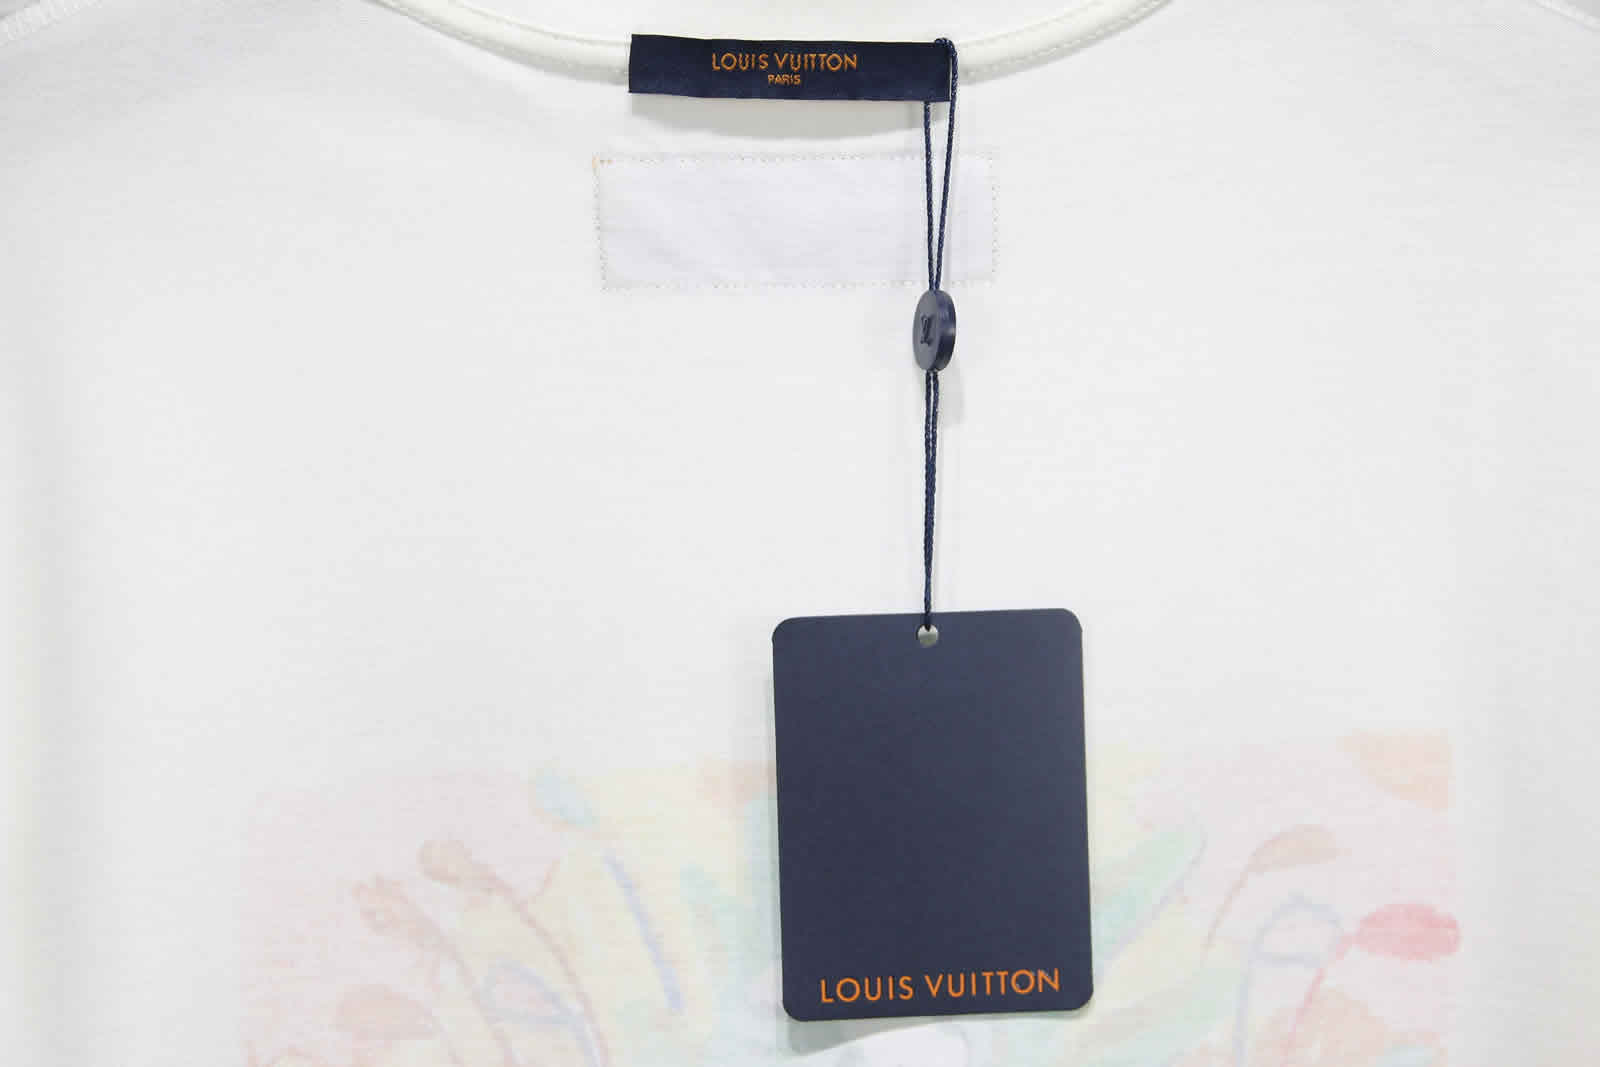 Louis Vuitton Graffiti Monster T Shirt 12 - www.kickbulk.org